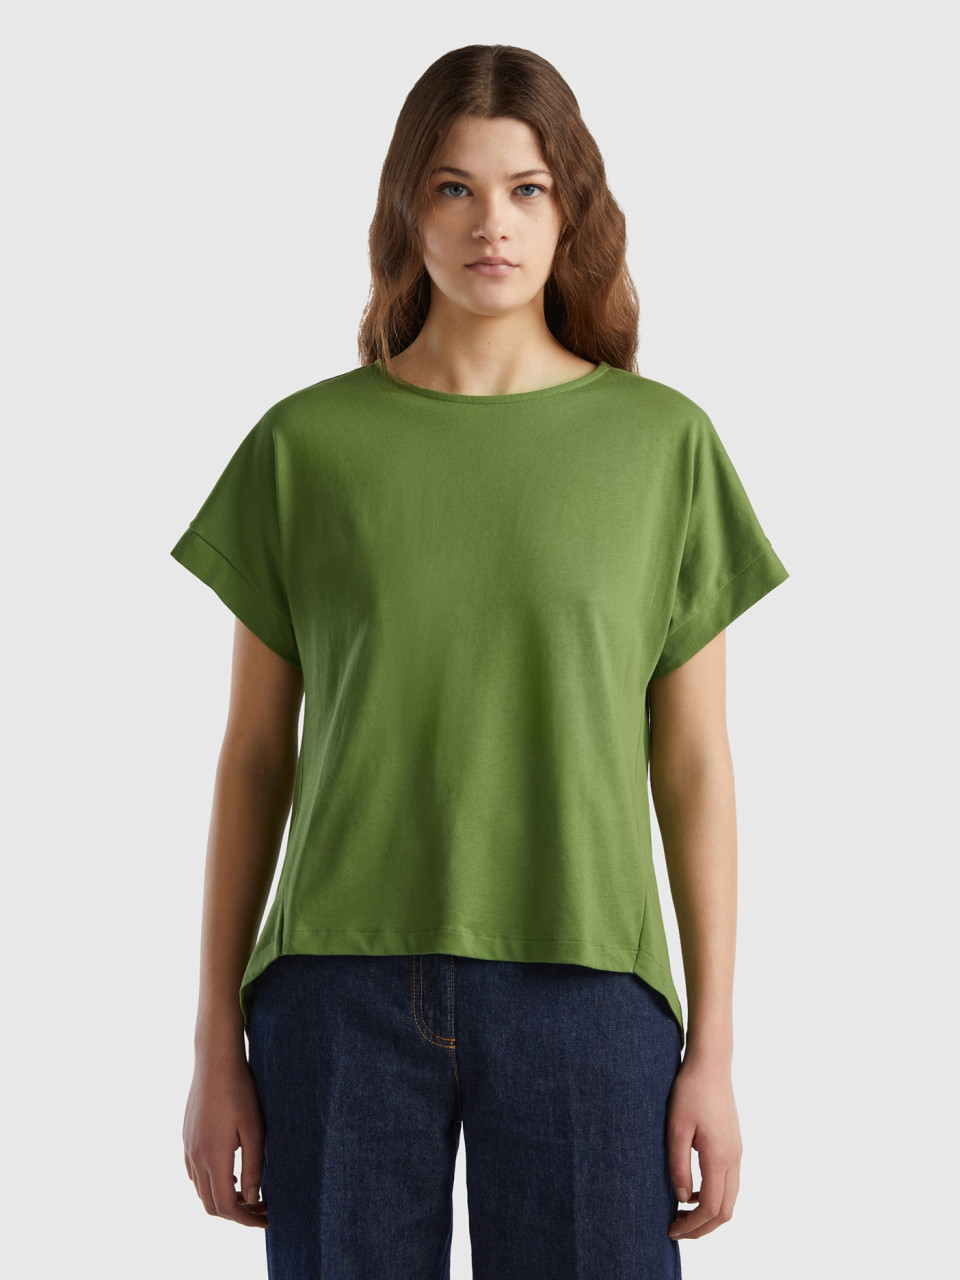 Benetton, T-shirt With Kimono Sleeves, Military Green, Men